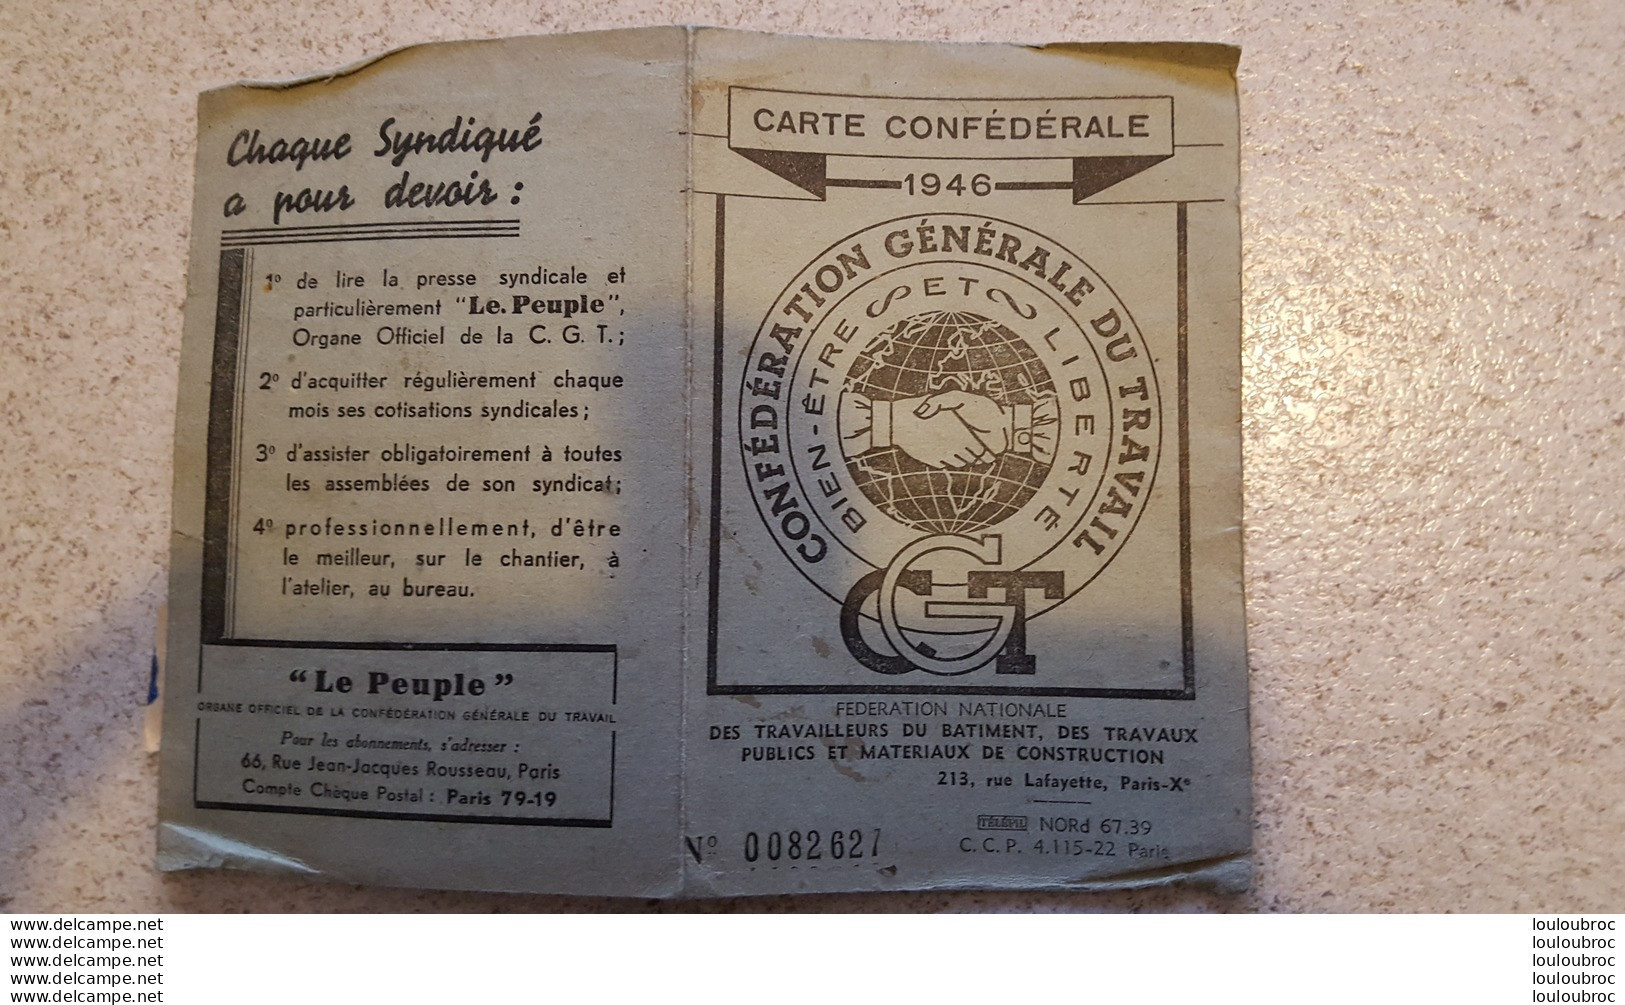 CARTE CONFEDERALE C.G.T. 1946 TRAVAILLEURS DU BATIMENT ET TRAVAUX PUBLICS CGT SECTION LOCALE - Historische Dokumente